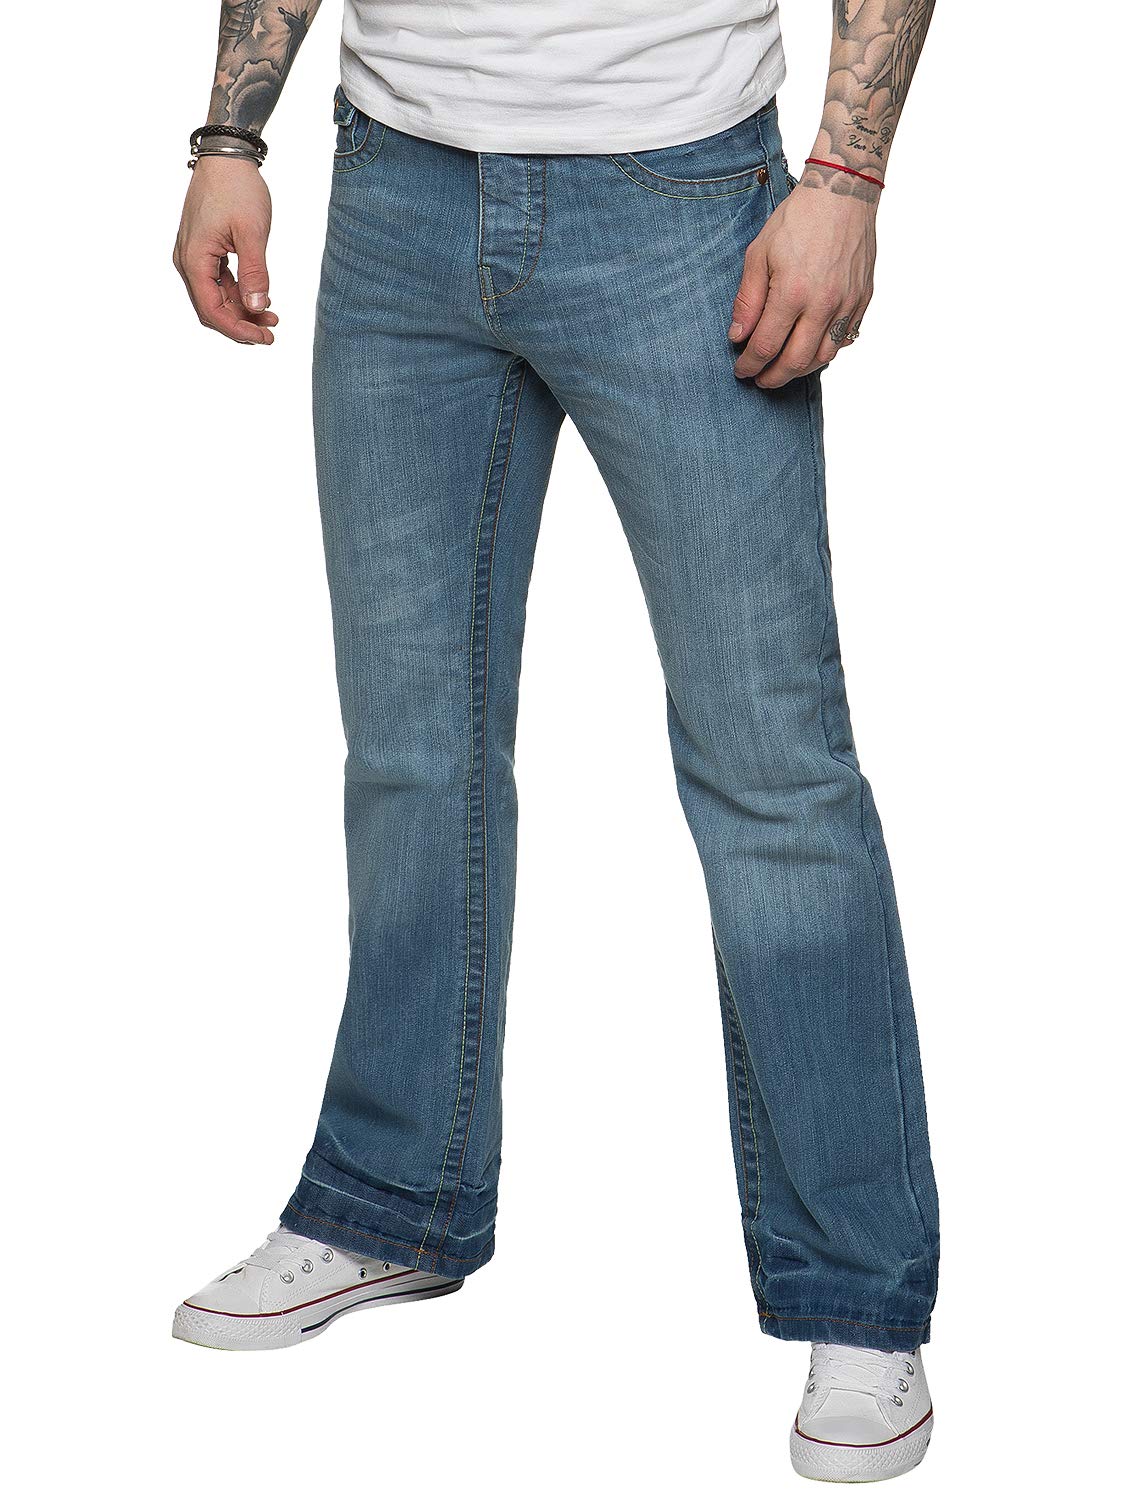 APT Herren Designer Basic Bootcut Flared Wide Leg Blue Denim Jeans – Range of Waist, blau, Bundweite: 91 cm, beinlänge: 76 cm (36 W / 30 L)